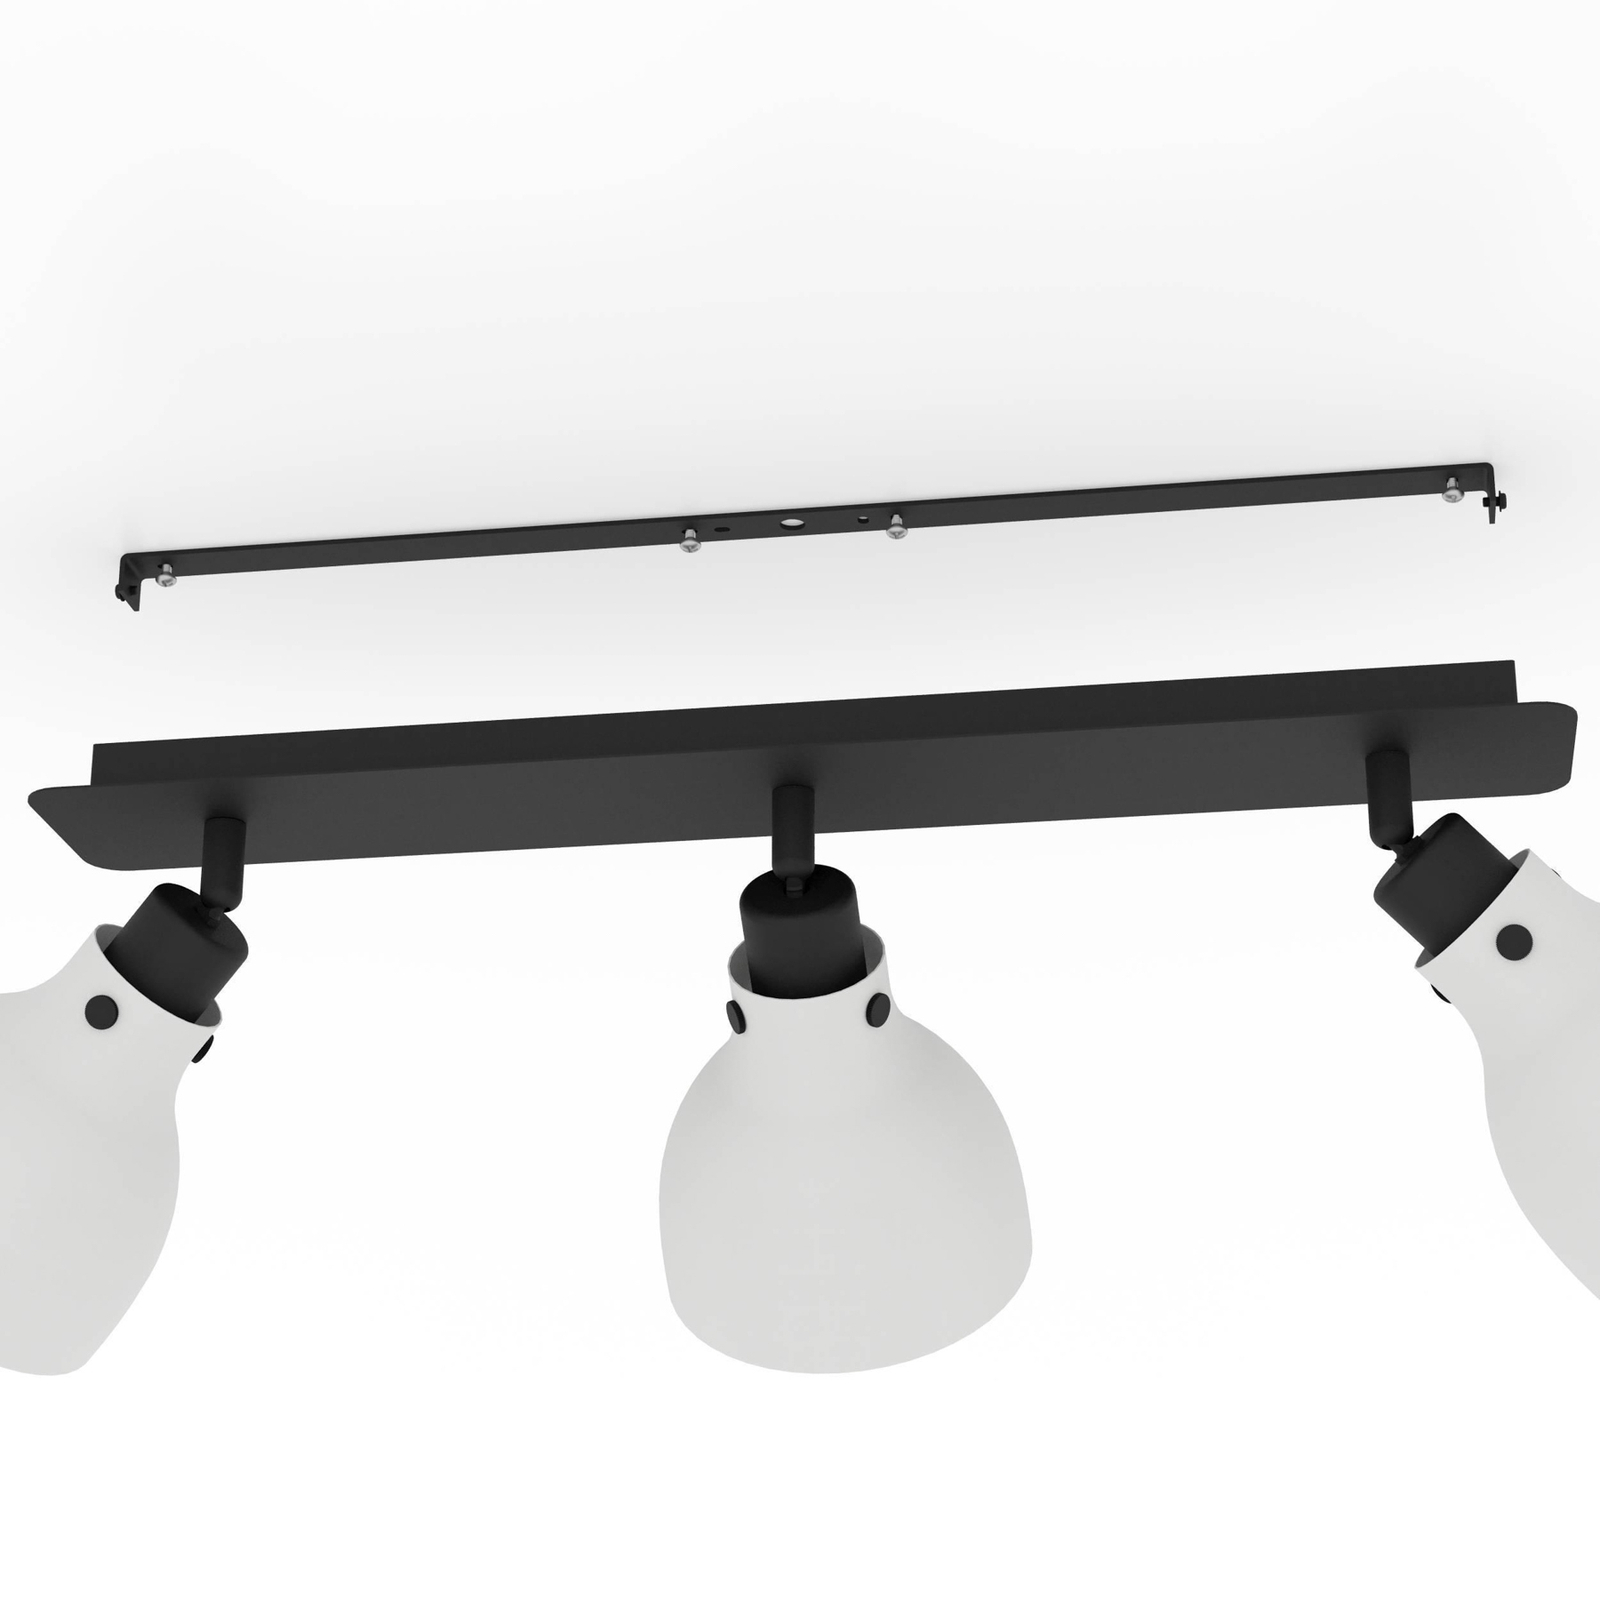 Matlock stropni reflektor, dužina 74 cm, sivo/crni, 3 žarulje.